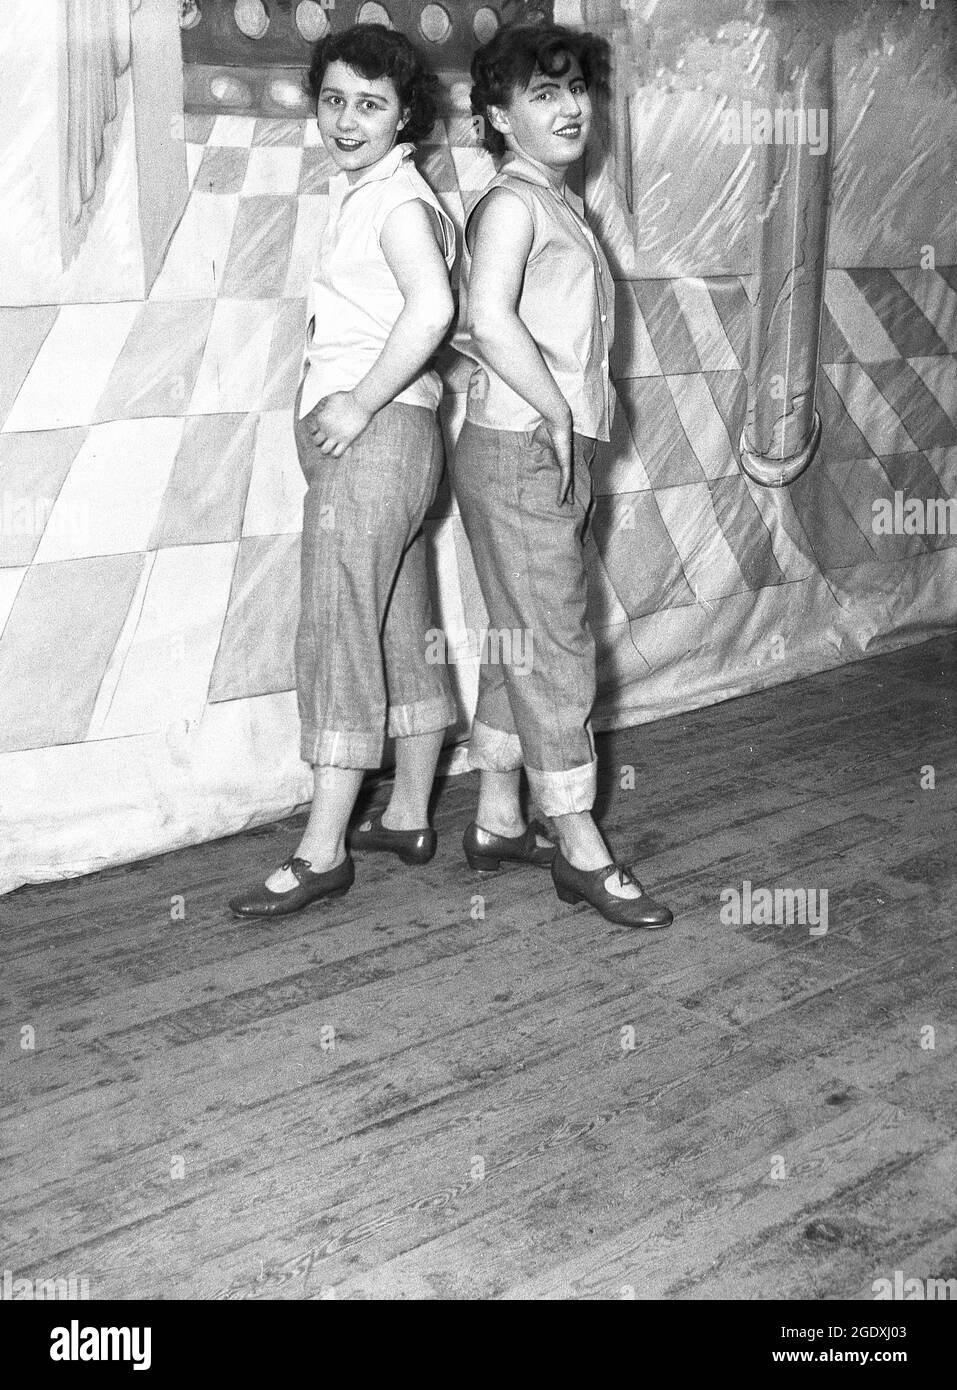 1957, historische, zwei junge weibliche Performer in ihren Kostümen - Jeans tauchten bei den ankes auf und ärmellose Blusen - erschienen in der Pantomine Aladdin, einer Geschichte, die auf einer mittelöstlichen Volksgeschichte basiert und auf der Bühne für ihr Foto stand, England, Großbritannien. Jeans mit Handschellen oder aufgerollten Hosen wurden in Großbritannien zu Beginn des Rock and Roll modisch, als Rockabilly populär wurde. Stockfoto